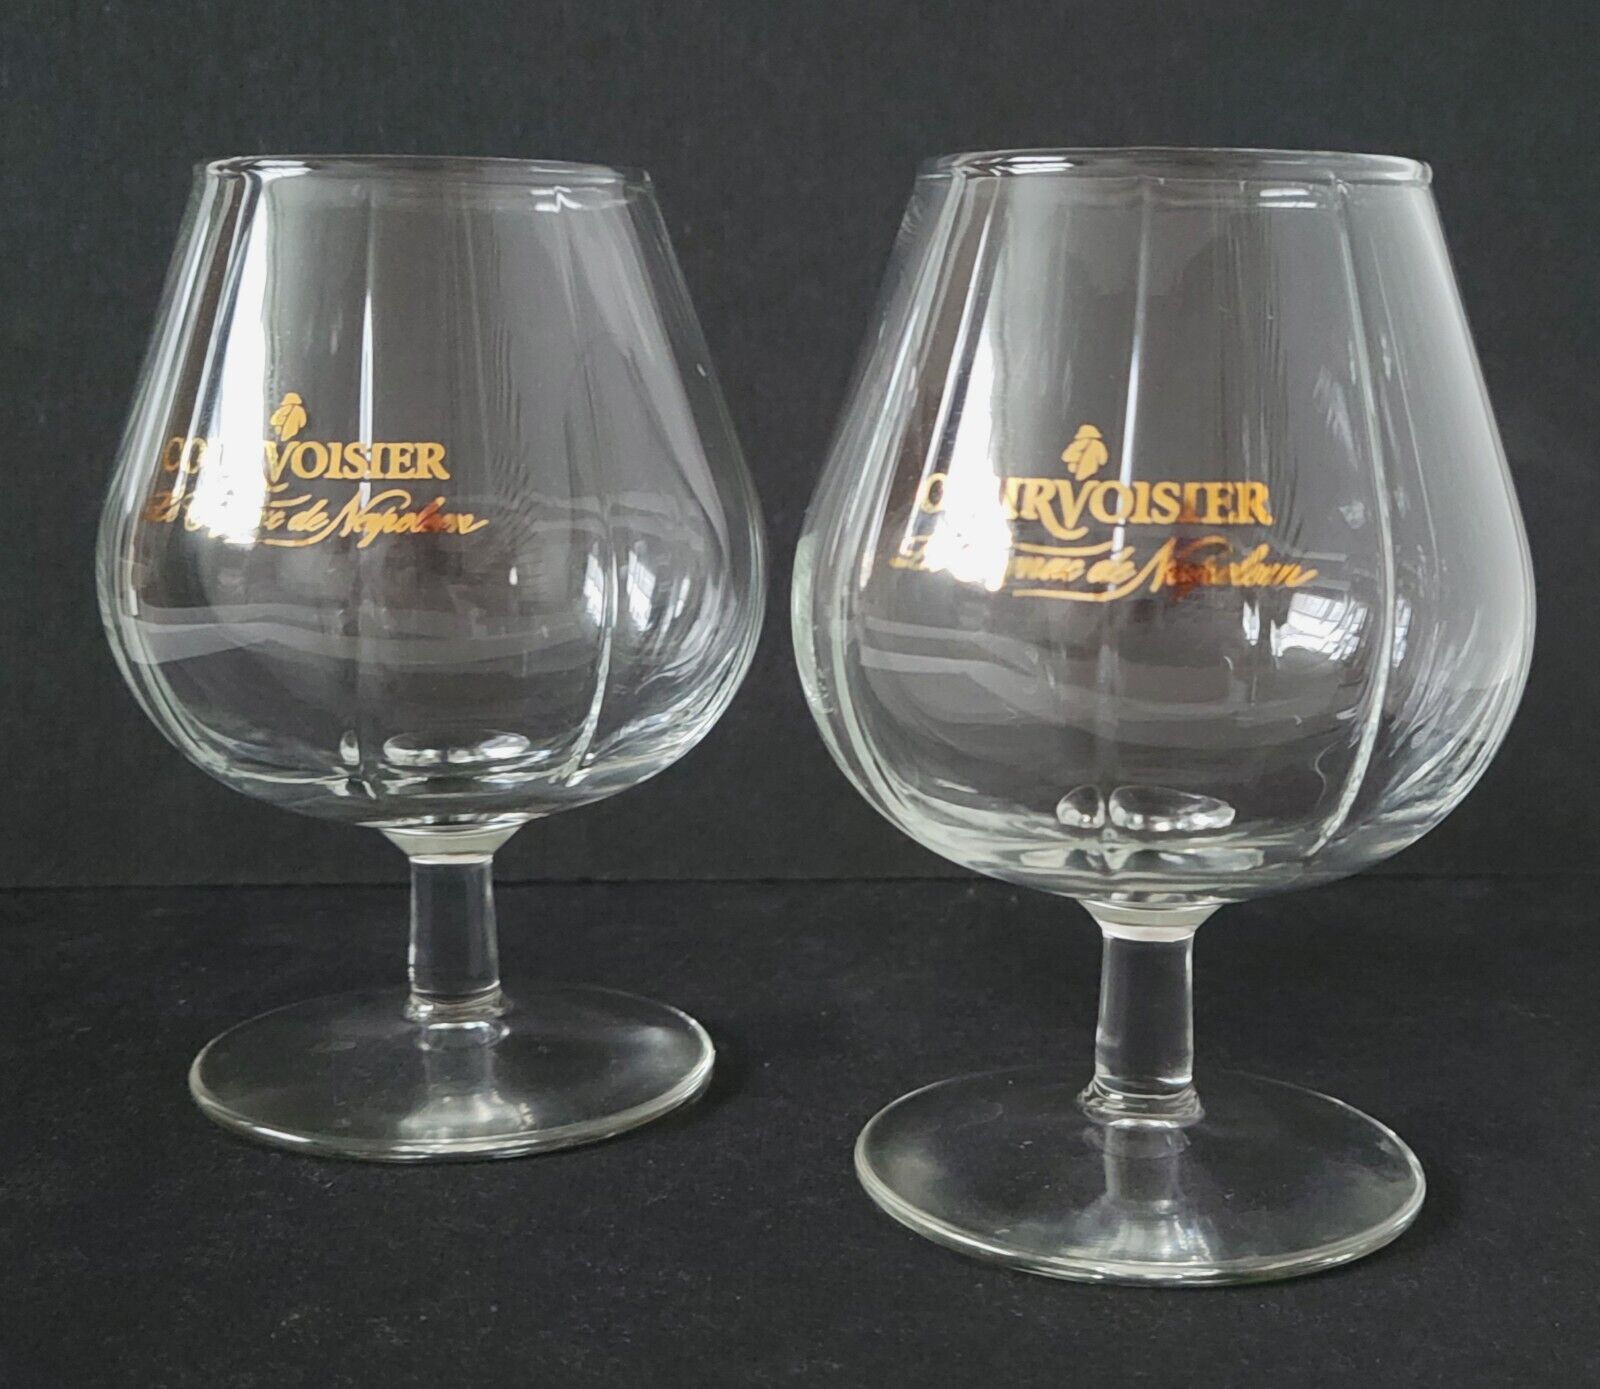 Courvoisier Le Cognac De Napoleon Liquor Snifter Glass Barware Pair